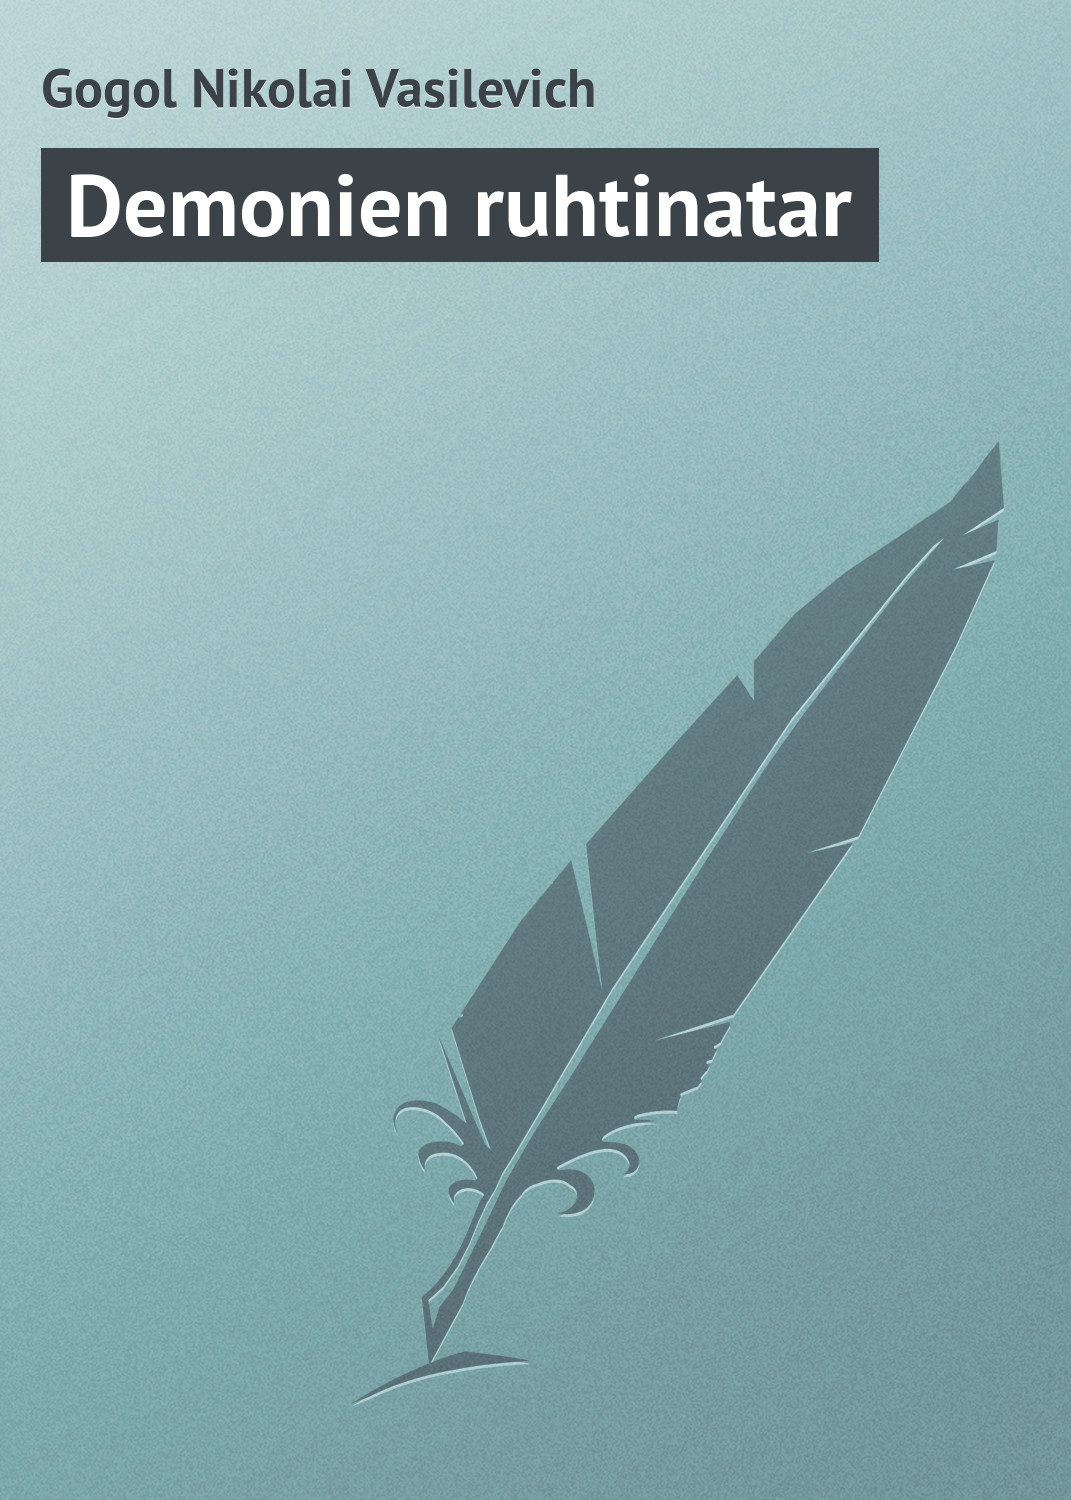 Книга Demonien ruhtinatar из серии , созданная Nikolai Gogol, может относится к жанру Русская классика. Стоимость электронной книги Demonien ruhtinatar с идентификатором 23162651 составляет 5.99 руб.